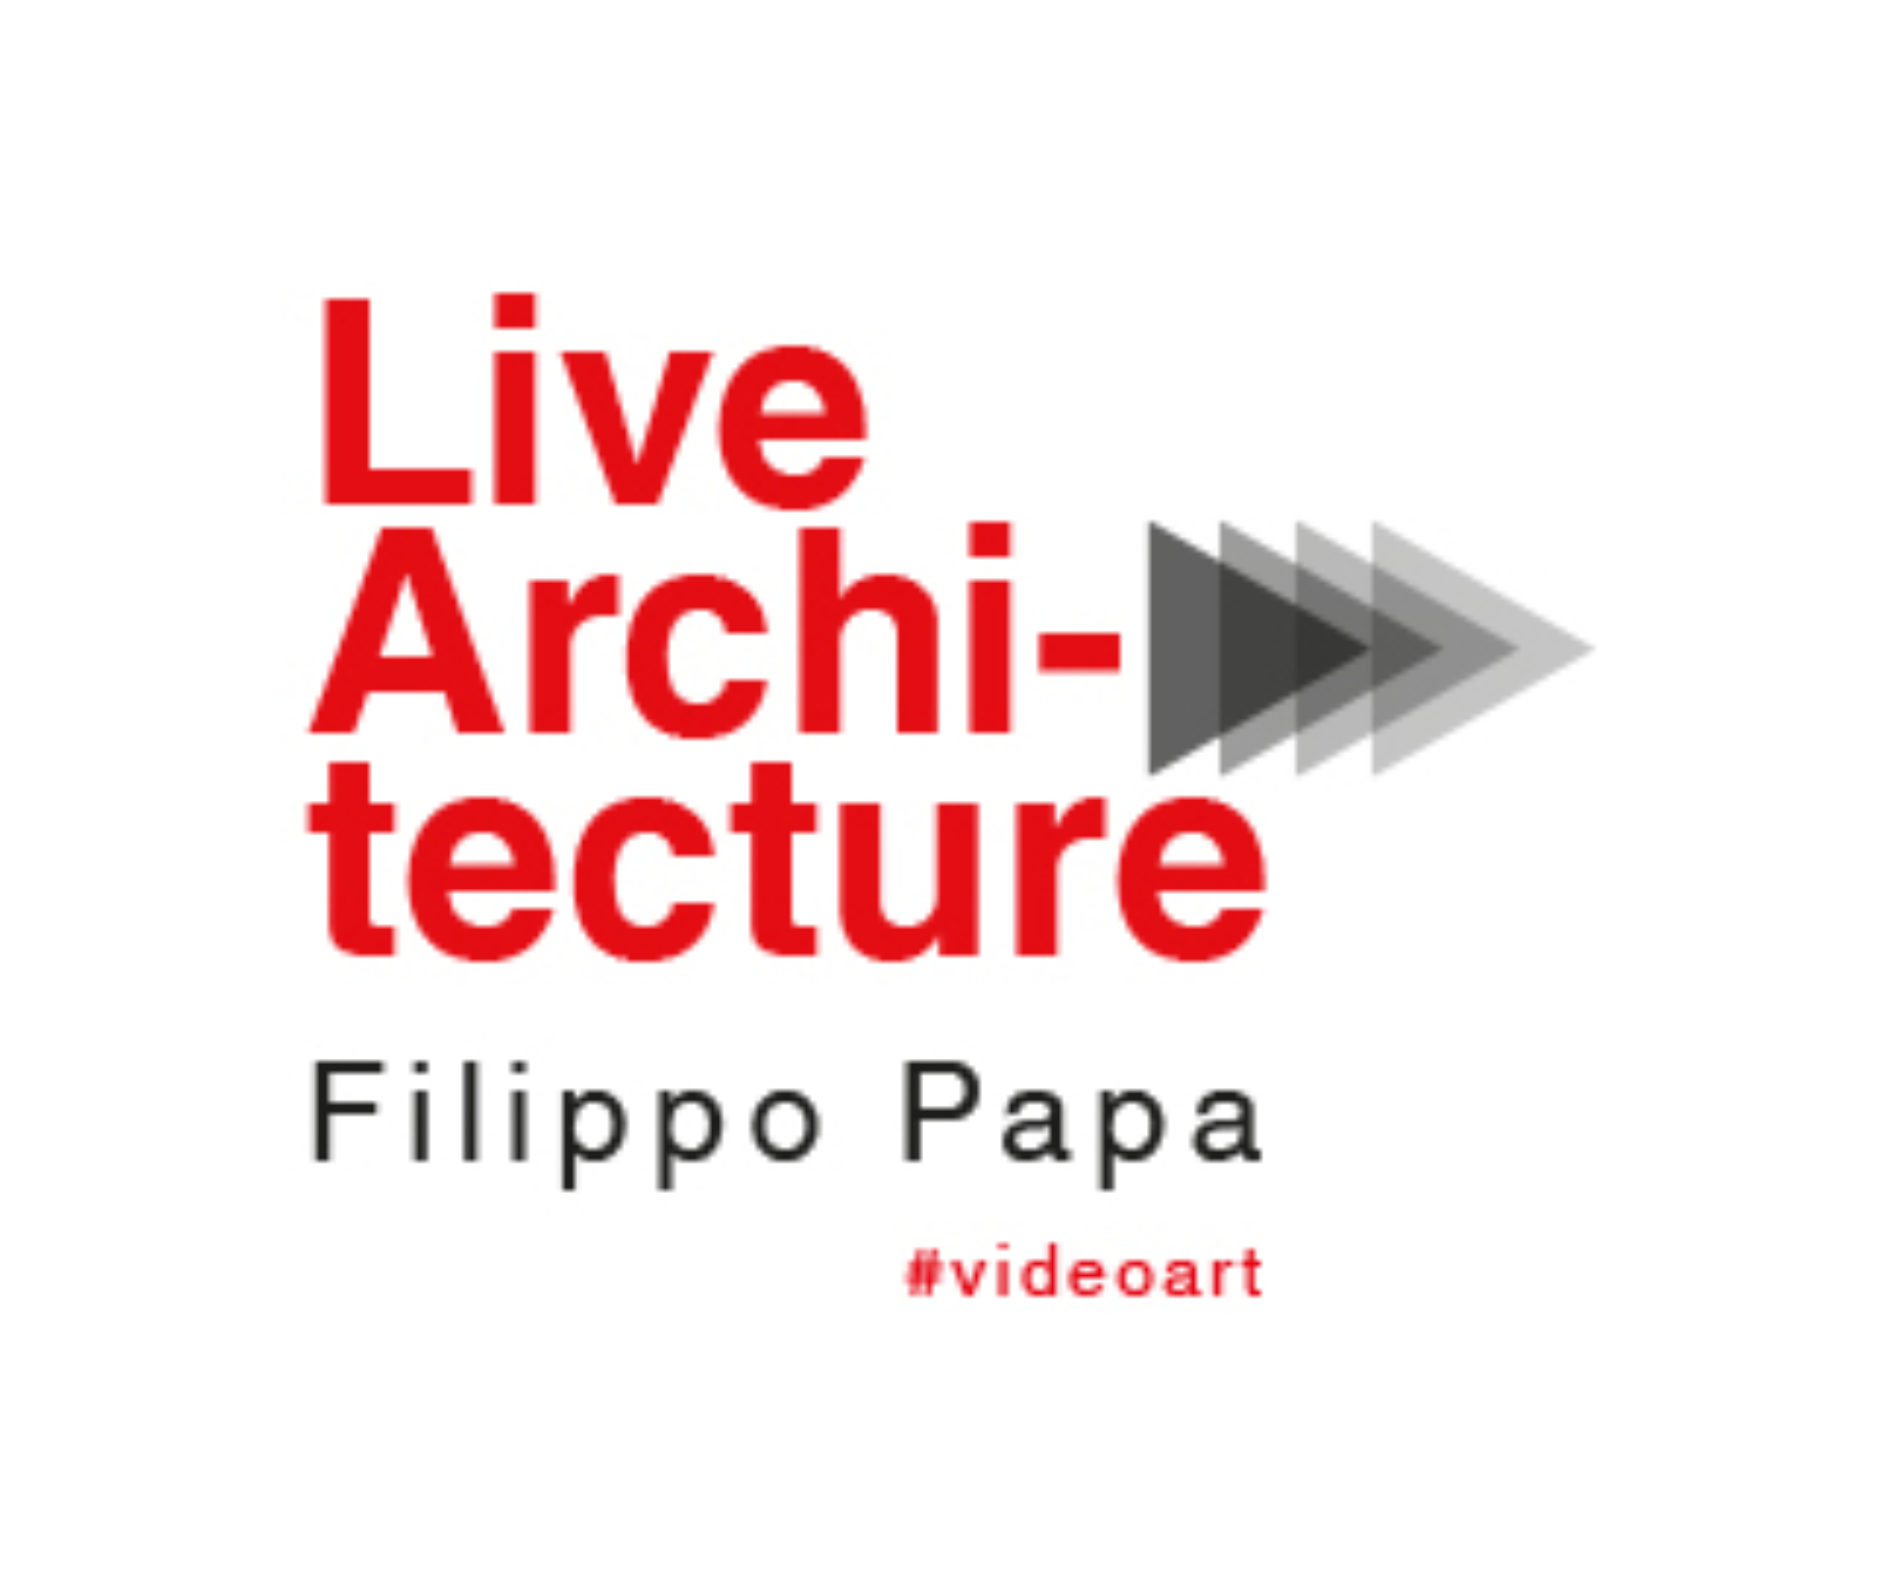 ” Live Architecture”, progetto innovativo lanciato dall’ artista Filippo Papa